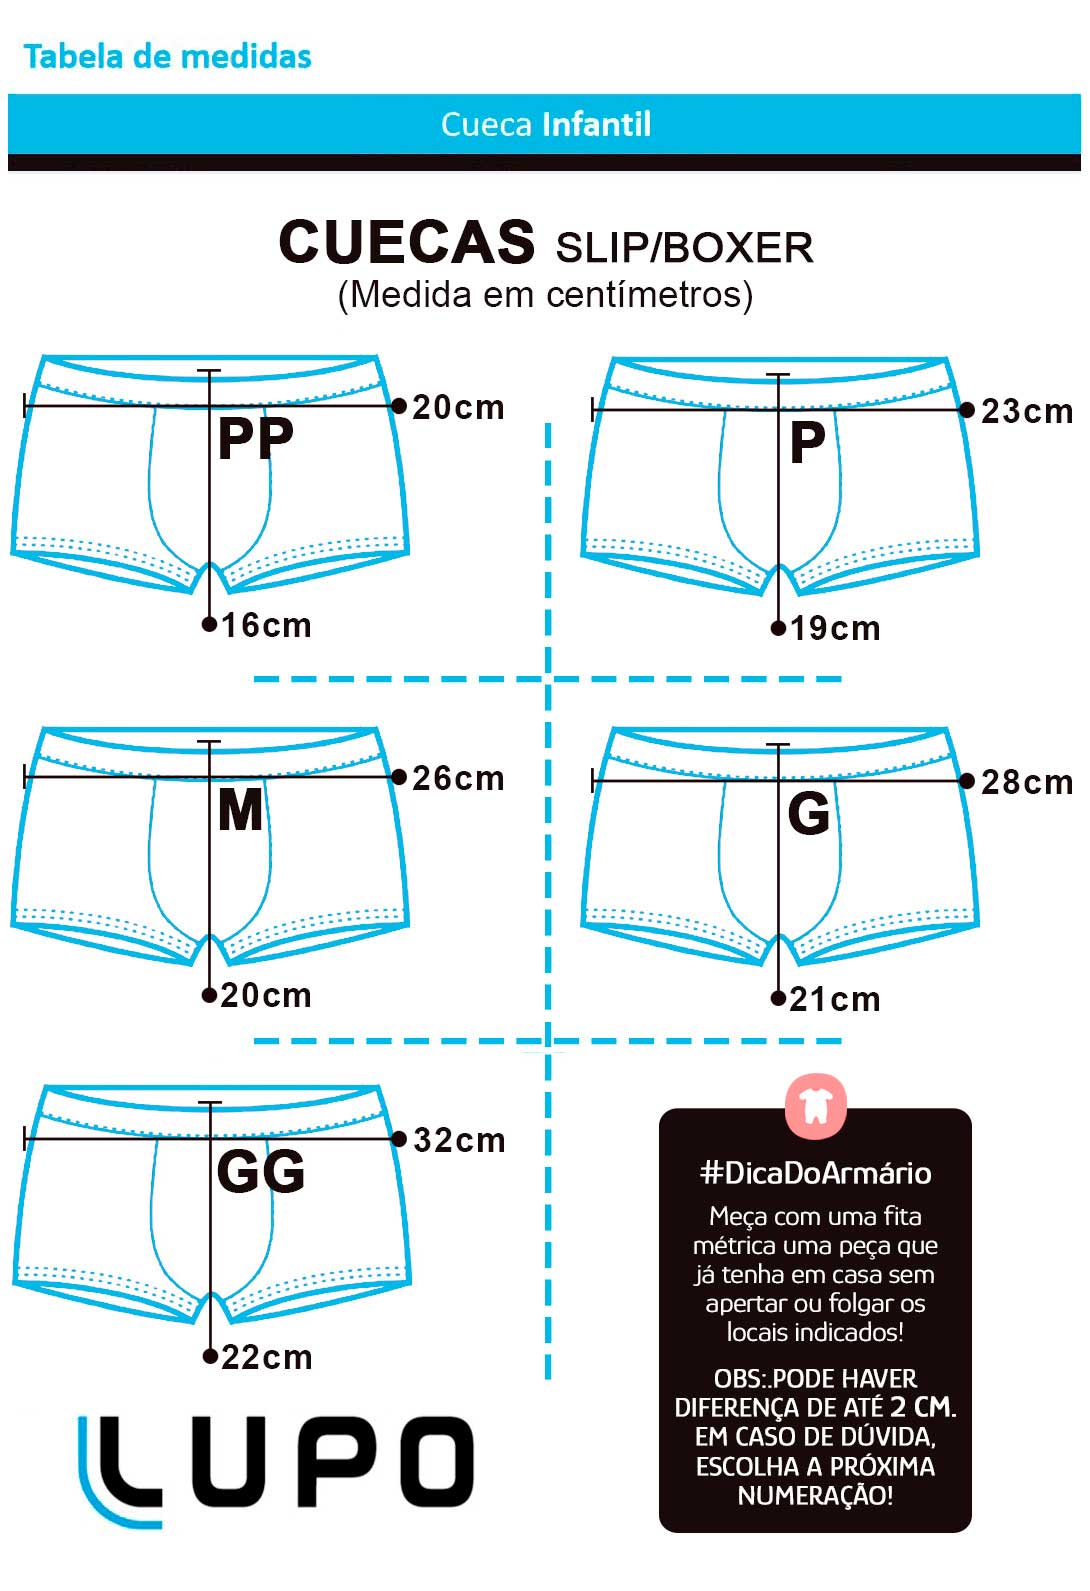 Cueca Infantil Boxer Lupo Kit com 10 Cuecas Sortidas: Tabela de medidas